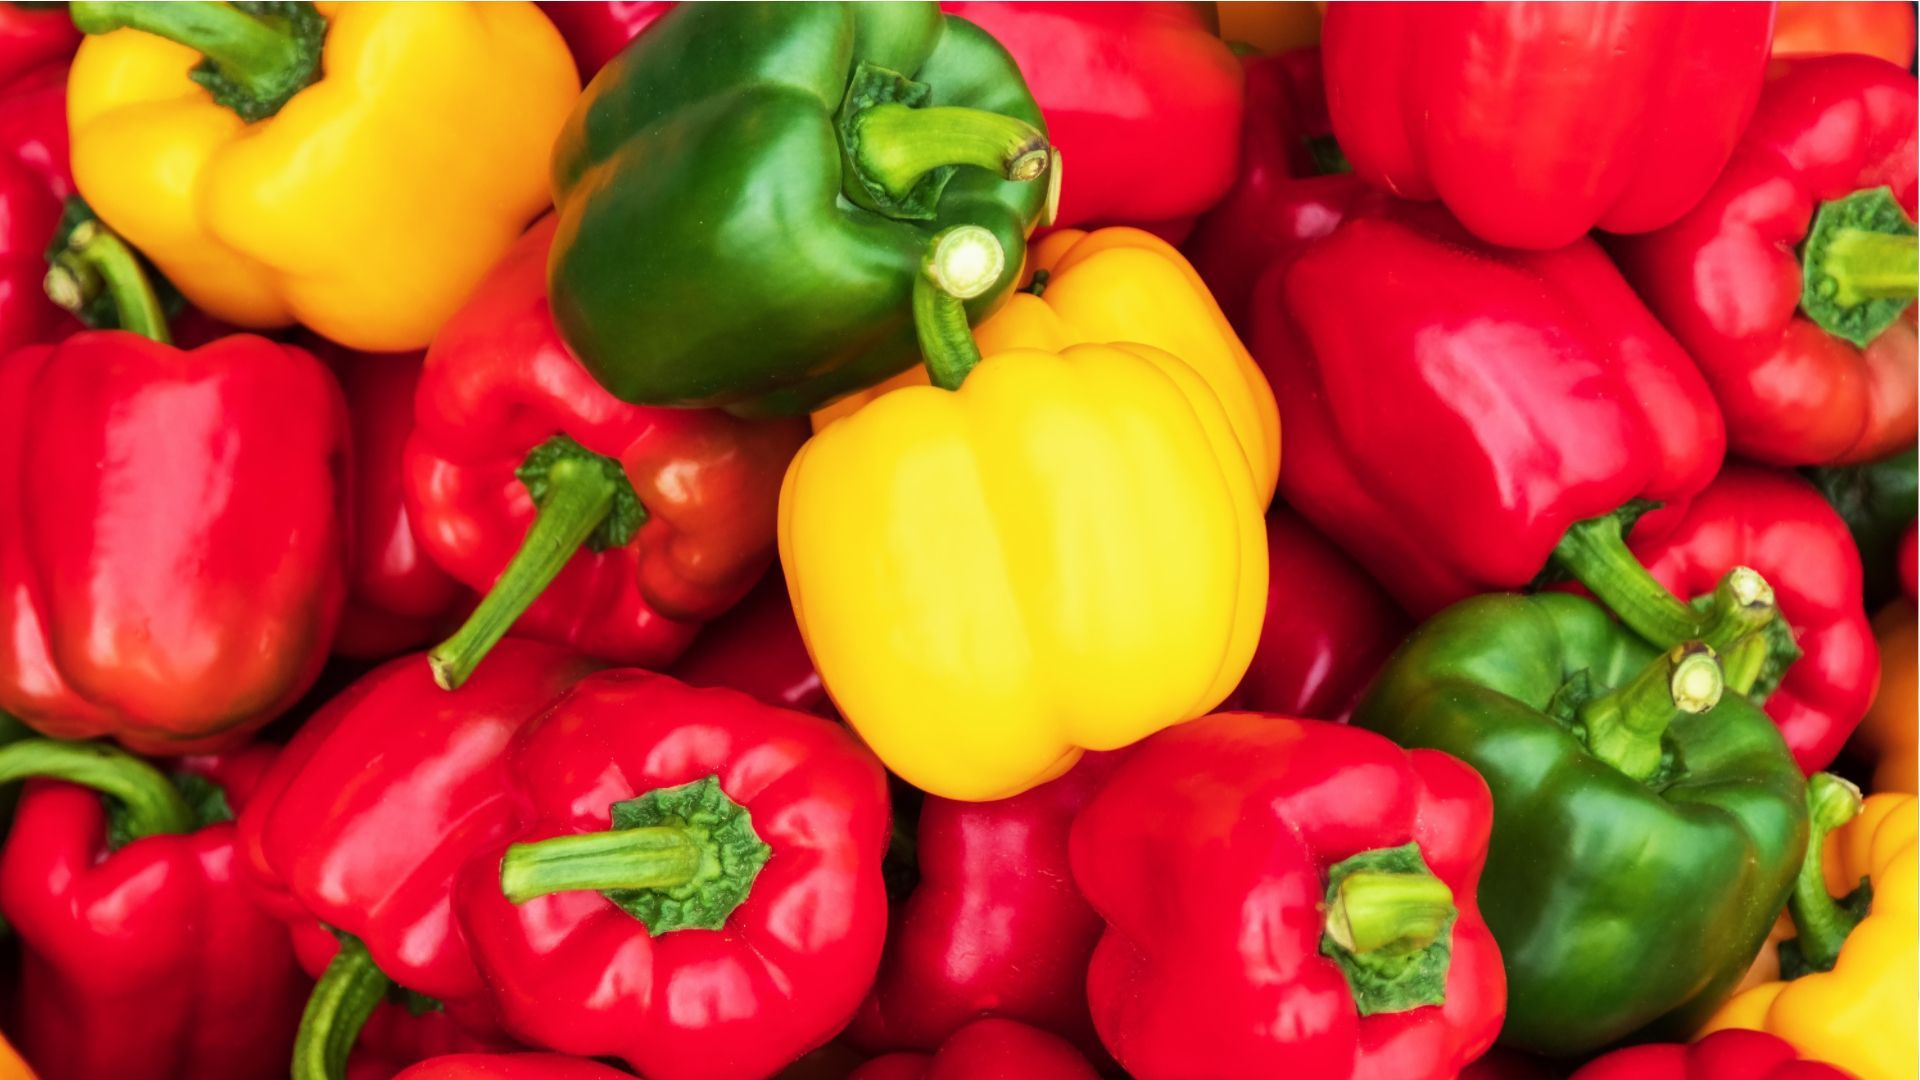 Rot, gelb oder grün: Welche Paprika ist am gesündesten?